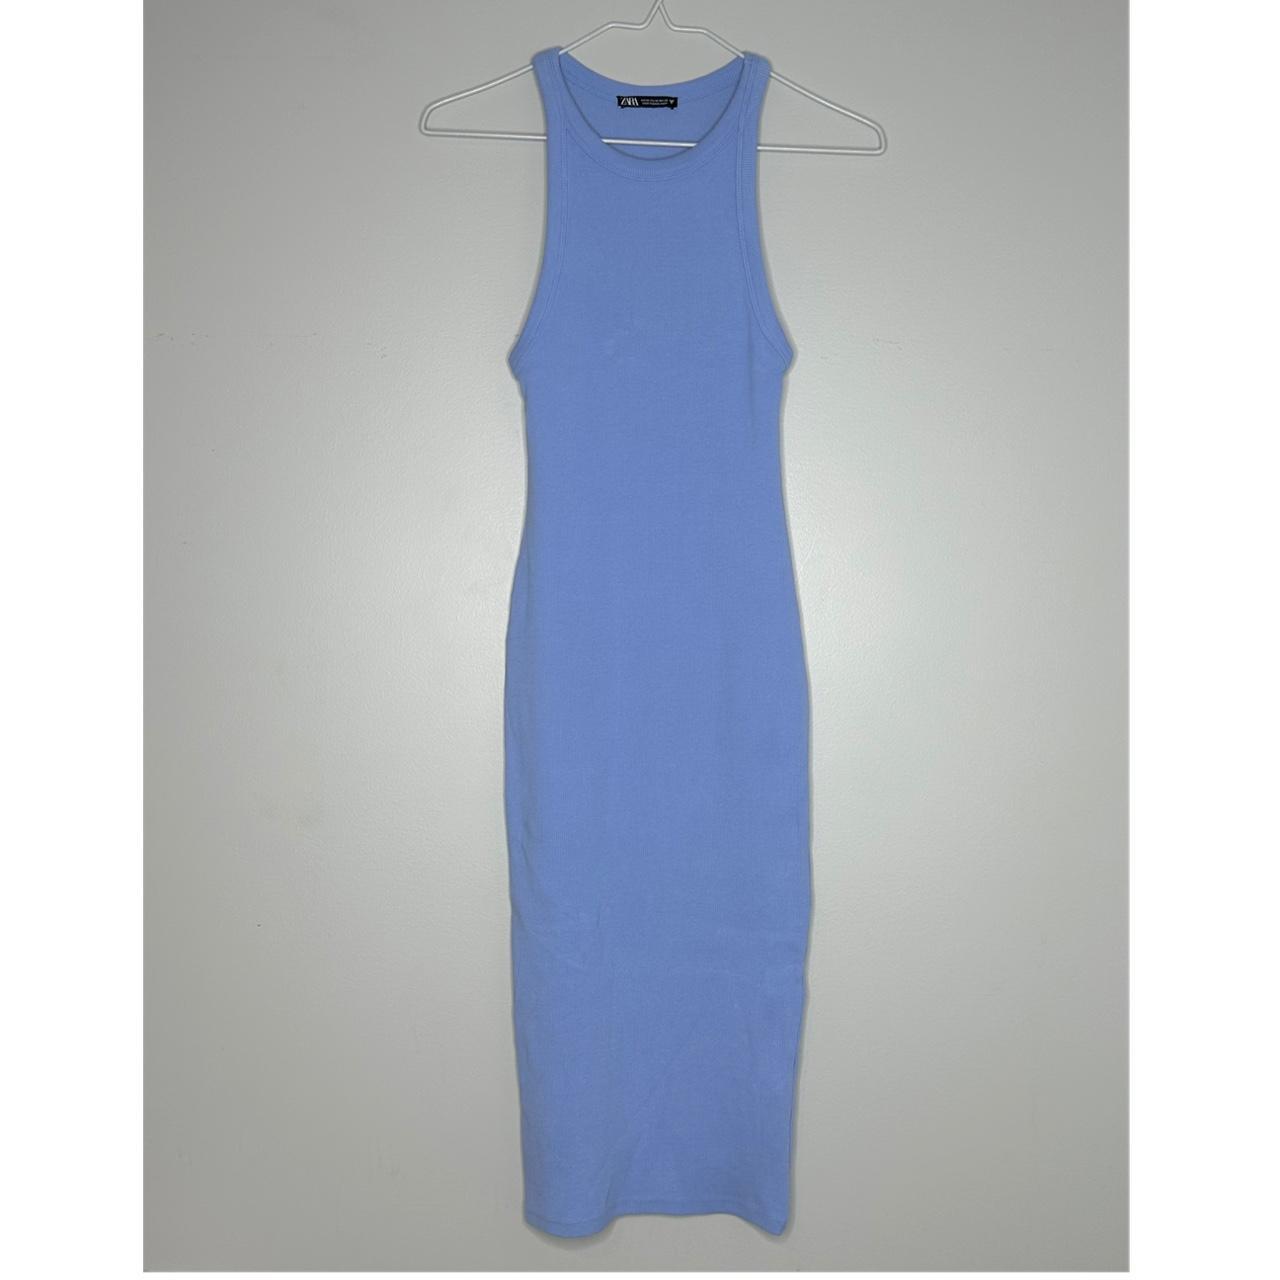 Zara Terez - Big Girls' Tank Dress 34075-14 (BLUE) 